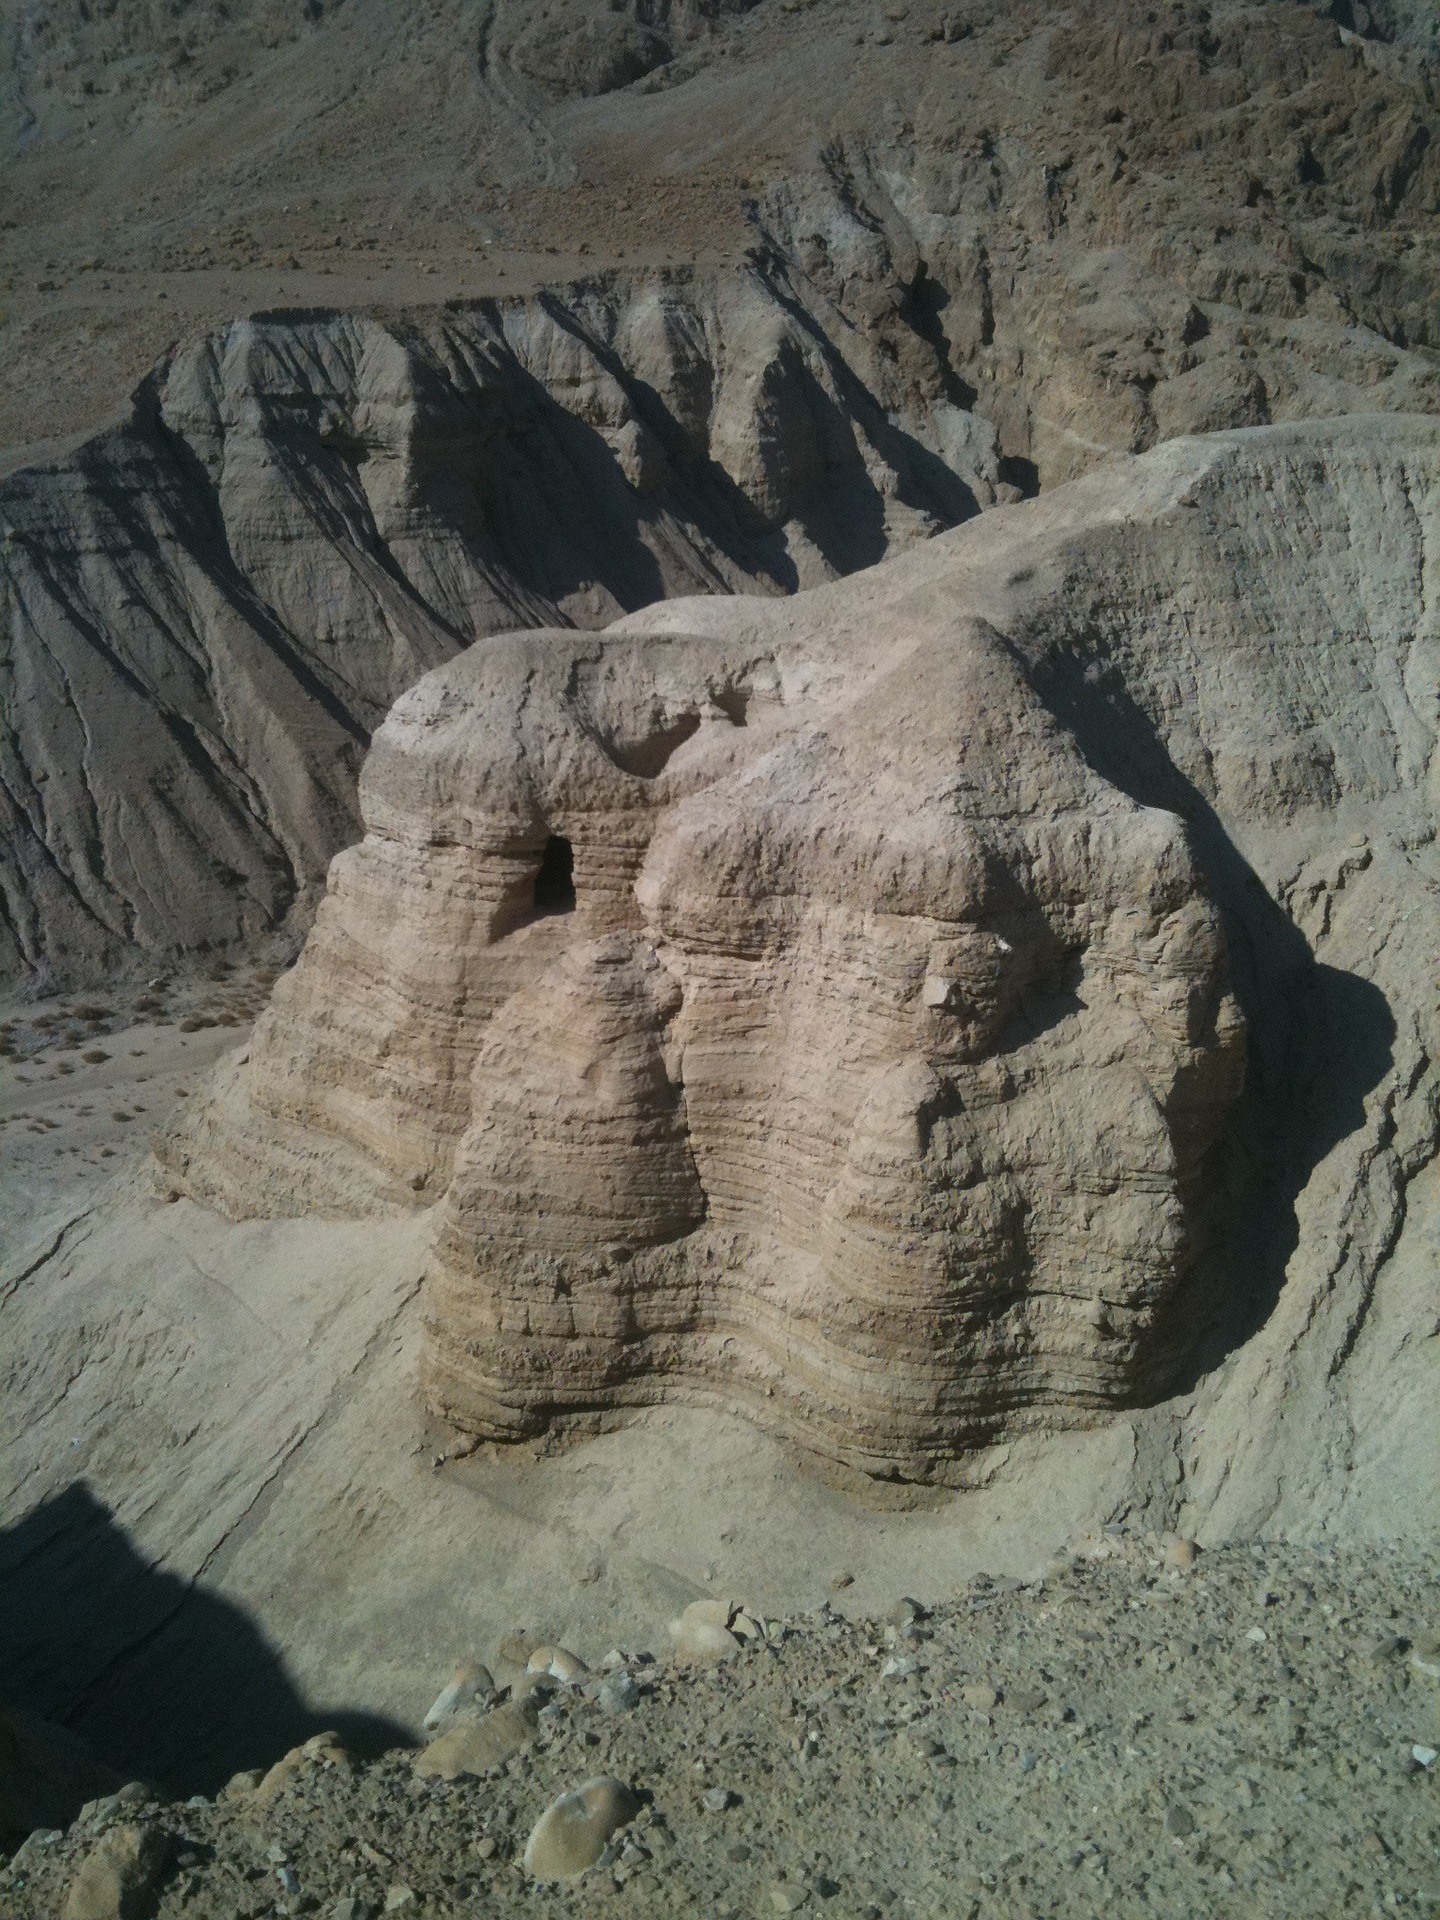 Qumran Caves